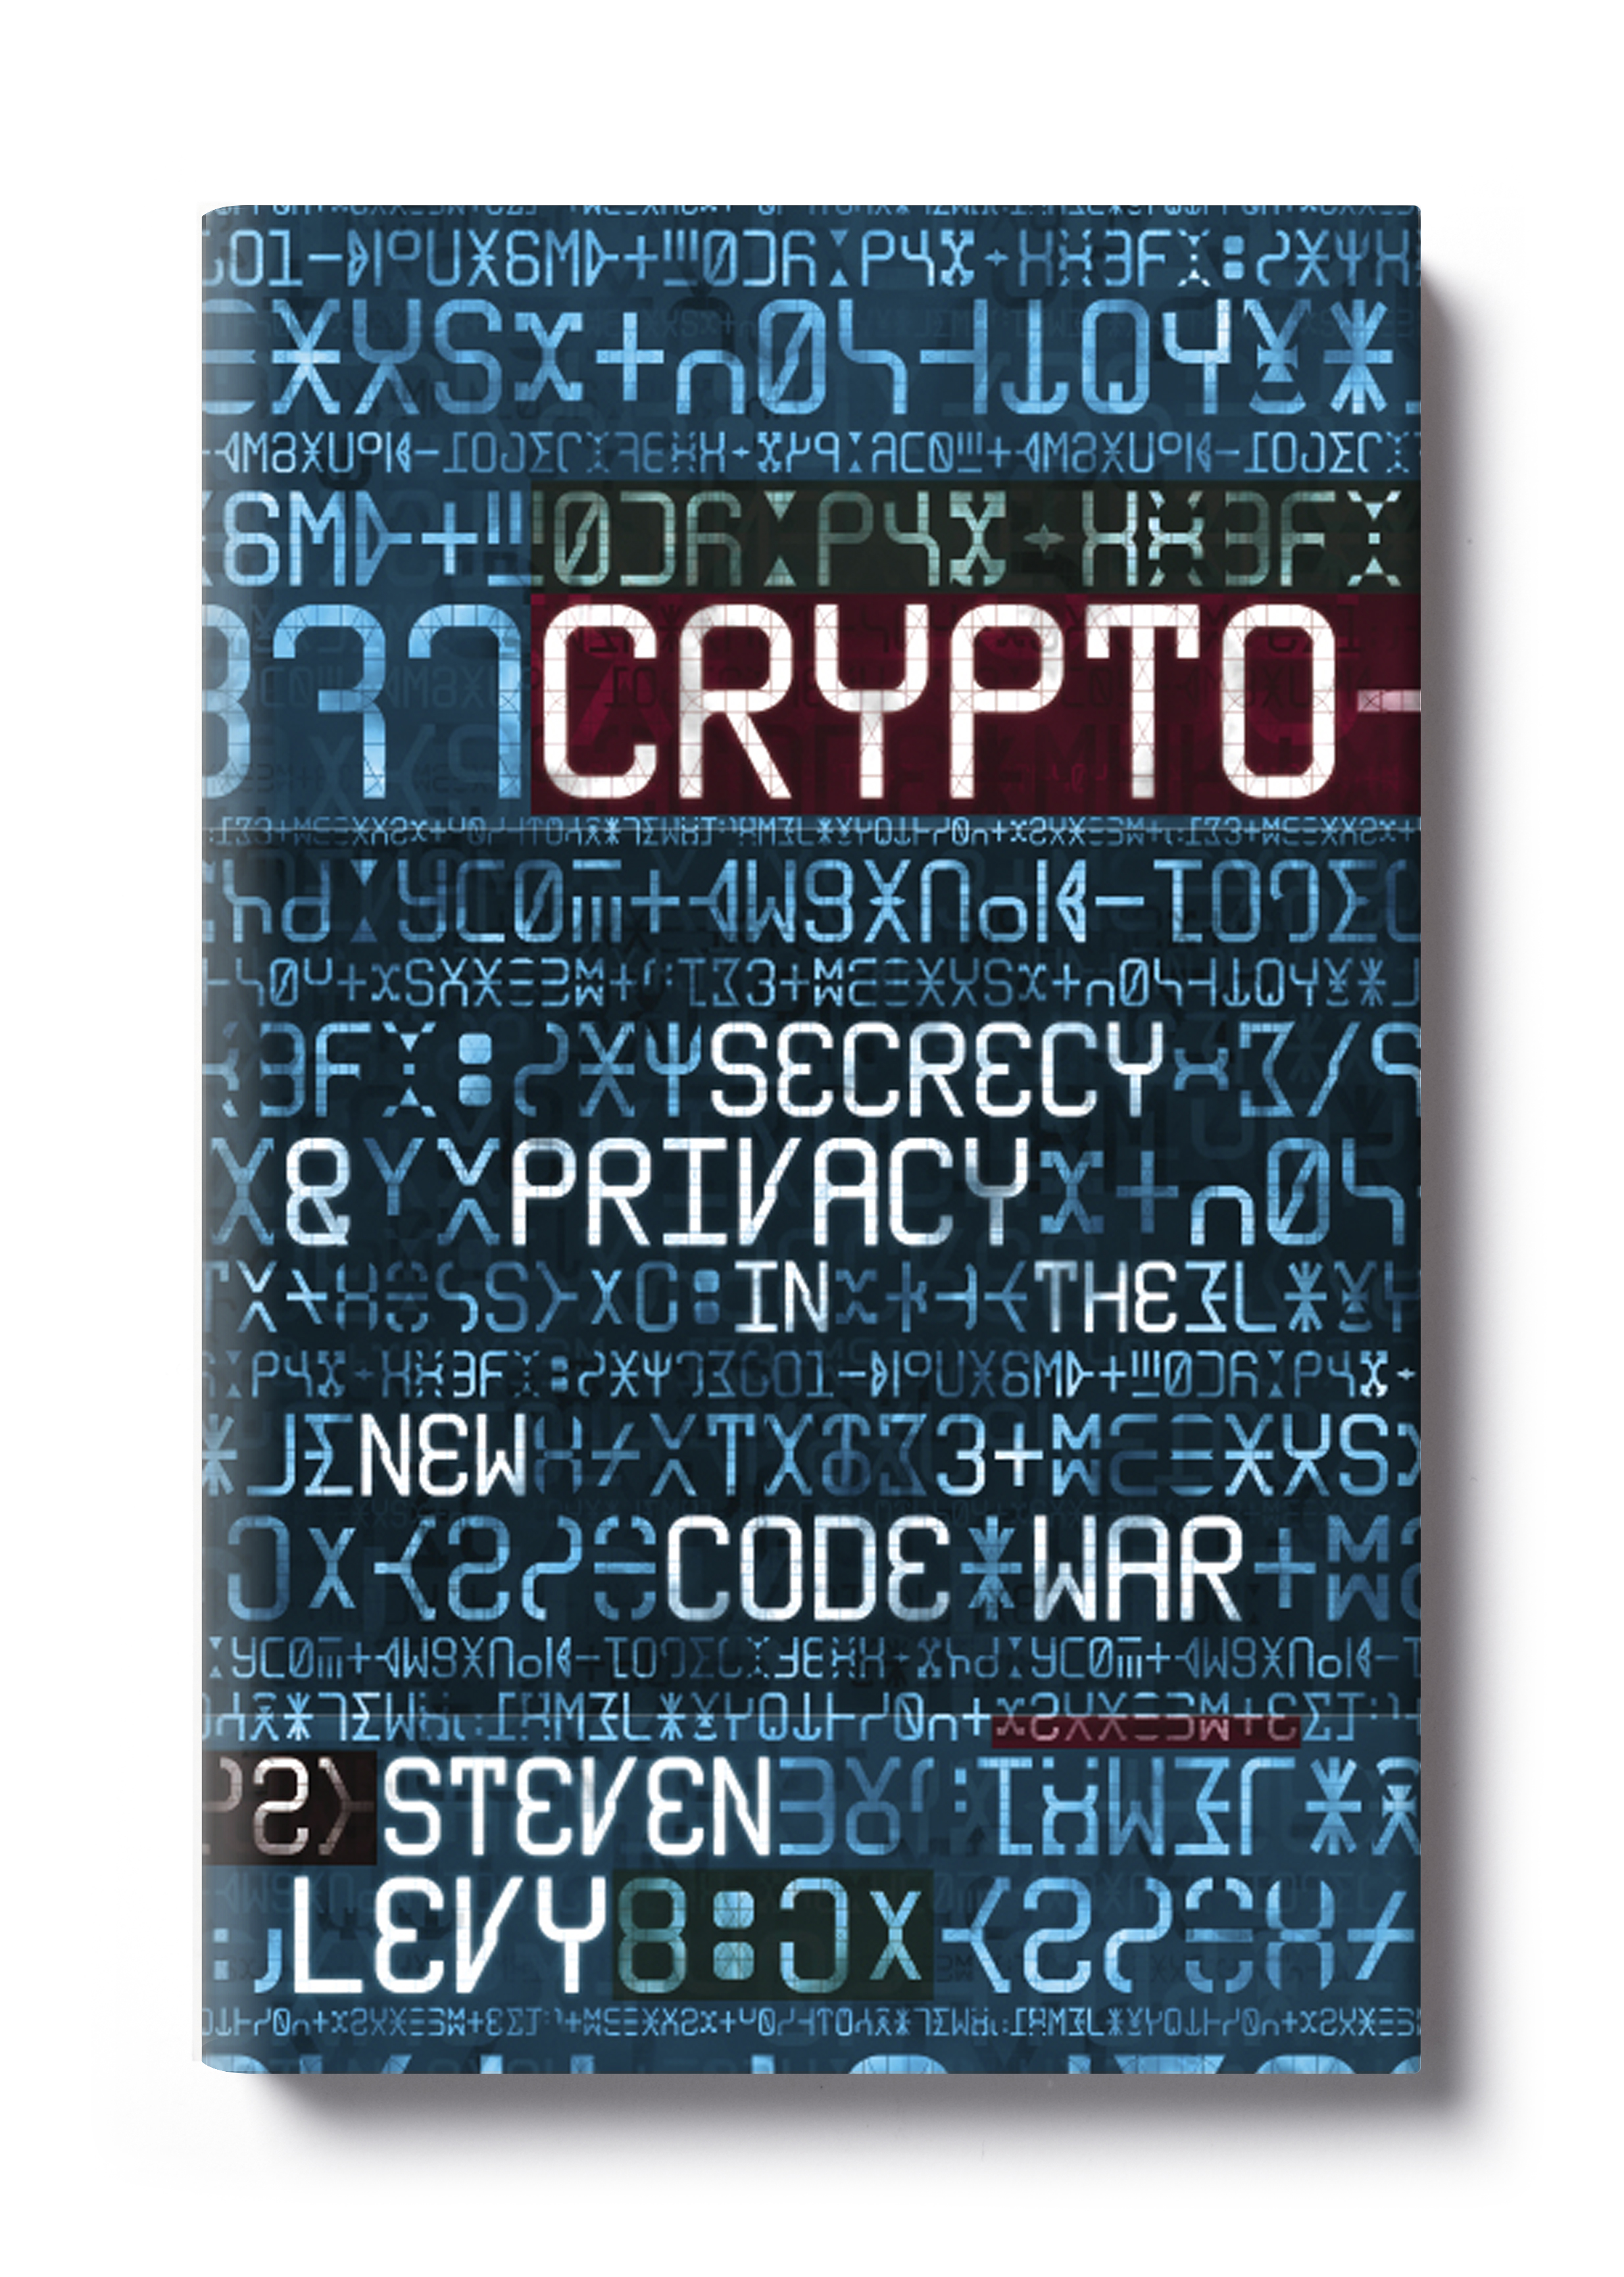  Crypto by Steven Levy -&nbsp; Design: Jim Stoddart  